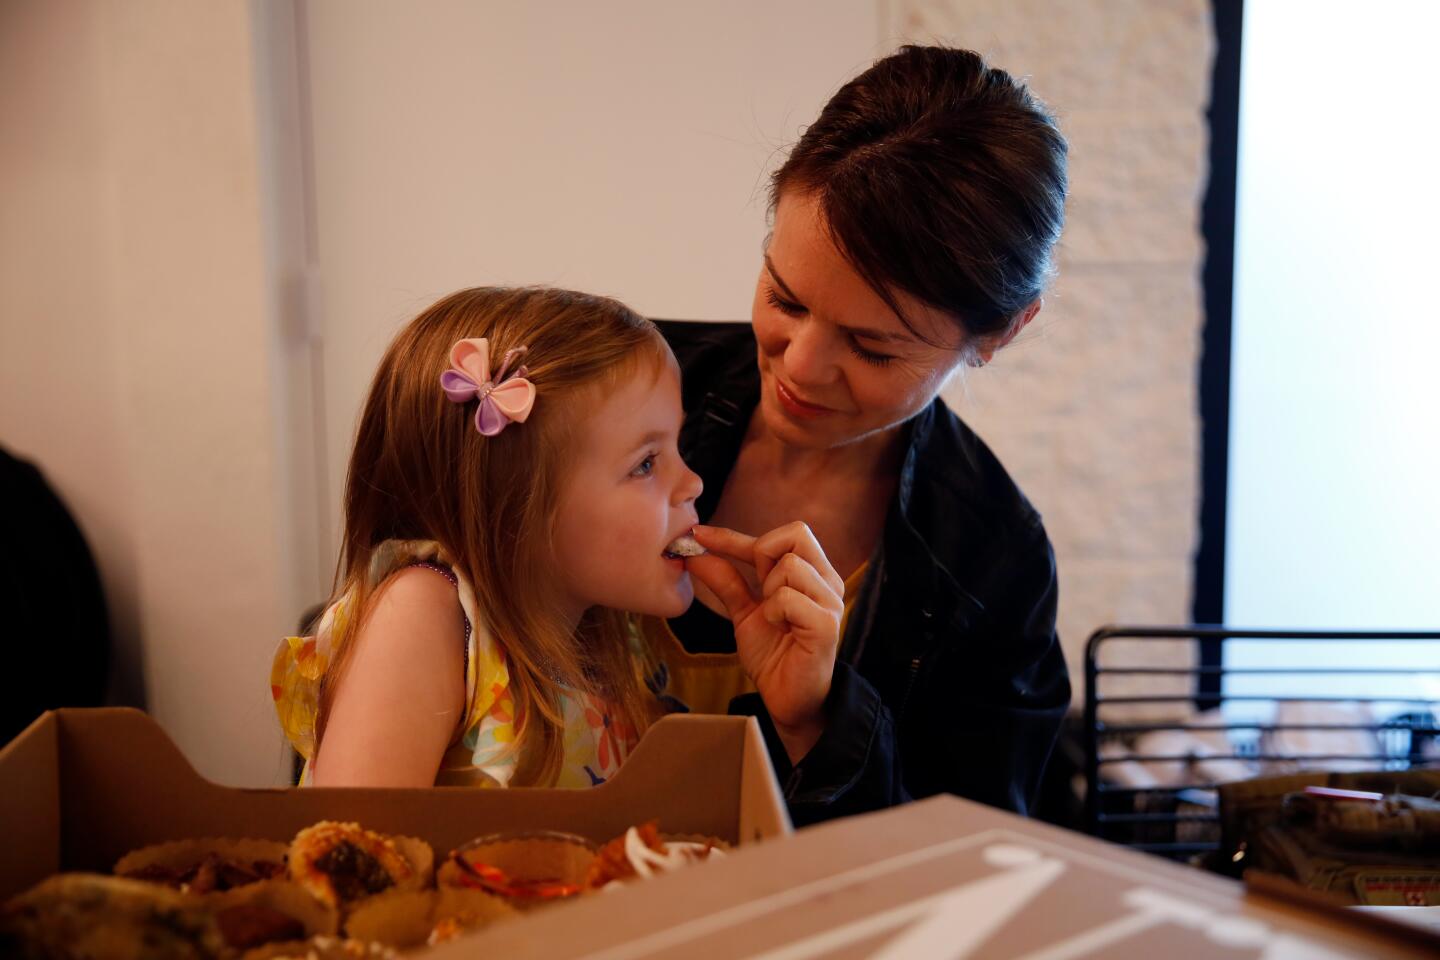 Kristen Olsen feeds her daughter Olivia Stouffer a pastry.